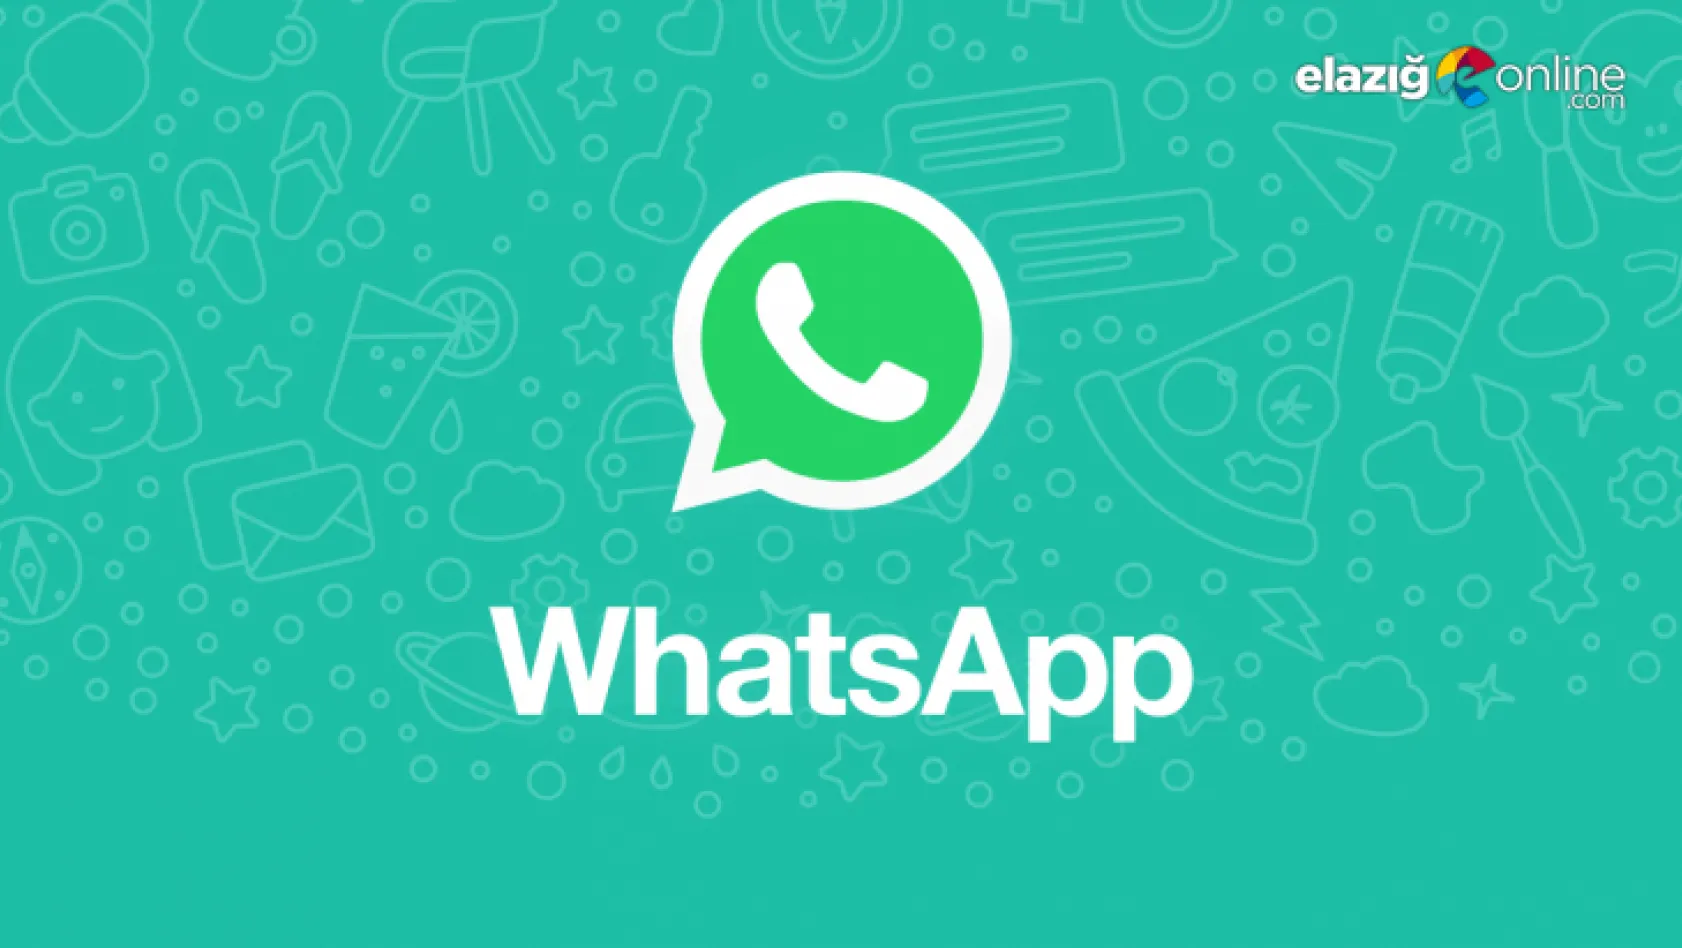 WhatsApp gizlilik sözleşmesi planıyla ne yapmak istiyor?